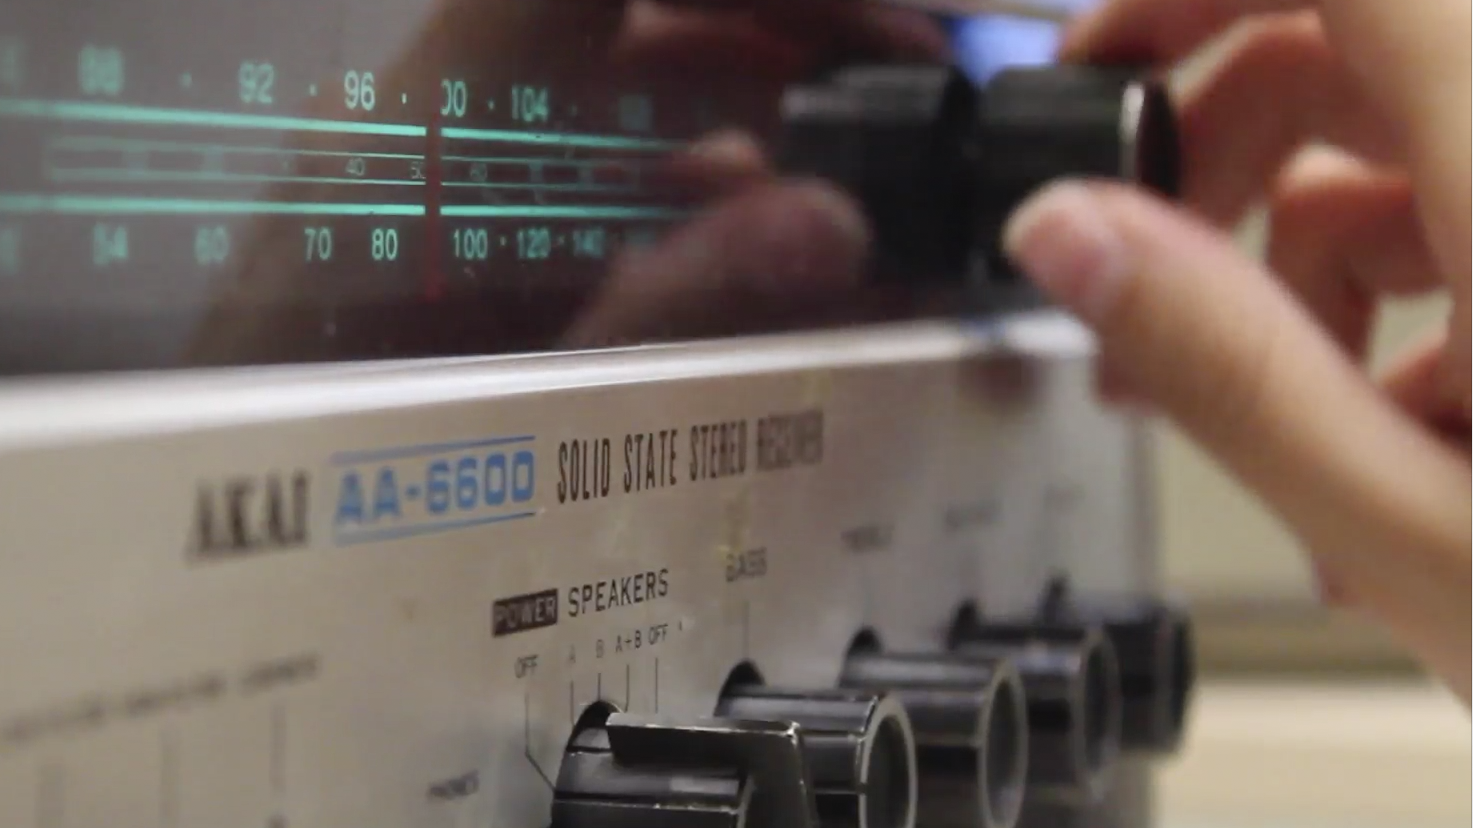 Tres registros sonoros se suman a la Colección Radio del Archivo Audiovisual